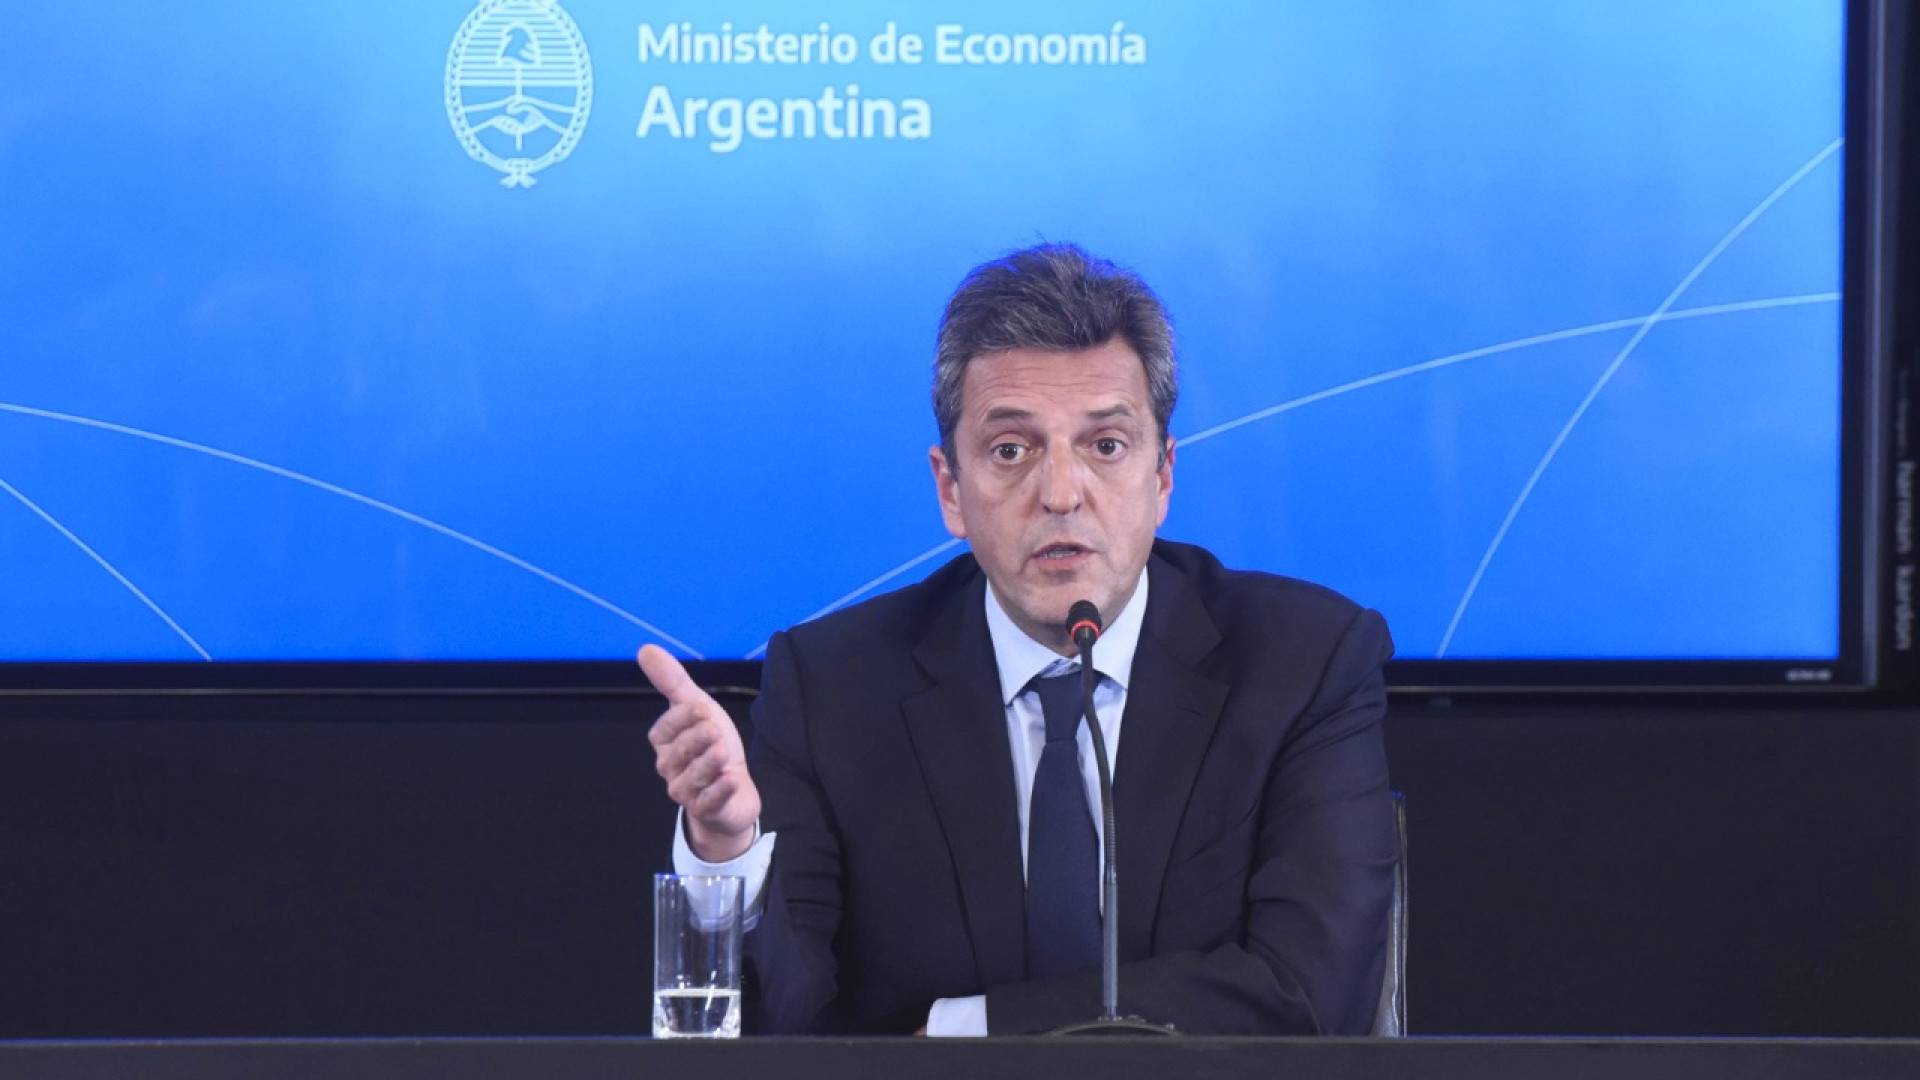 Министр экономики, промышленного производства и сельского хозяйства Аргентины Серхио Масса